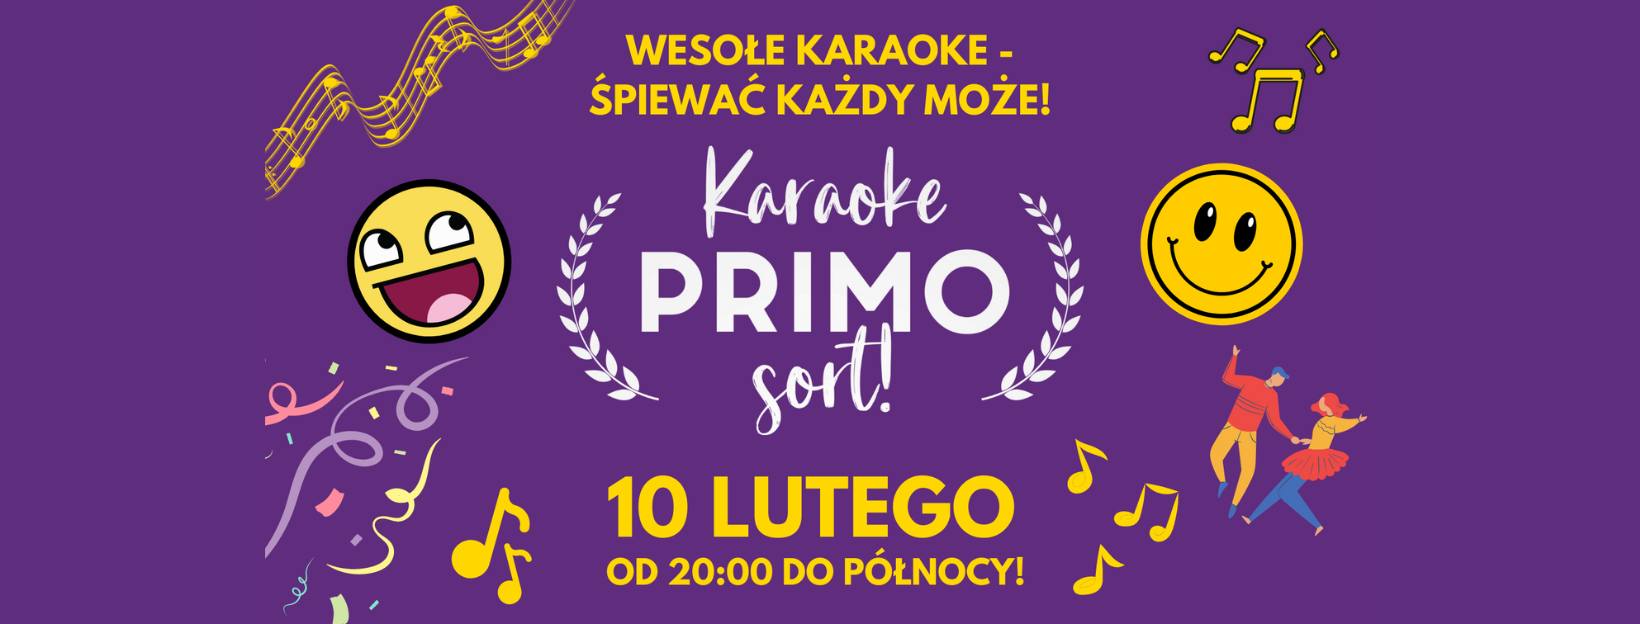 Wesołe Karaoke – Śpiewać Każdy Może / Karaoke Primo Sort!